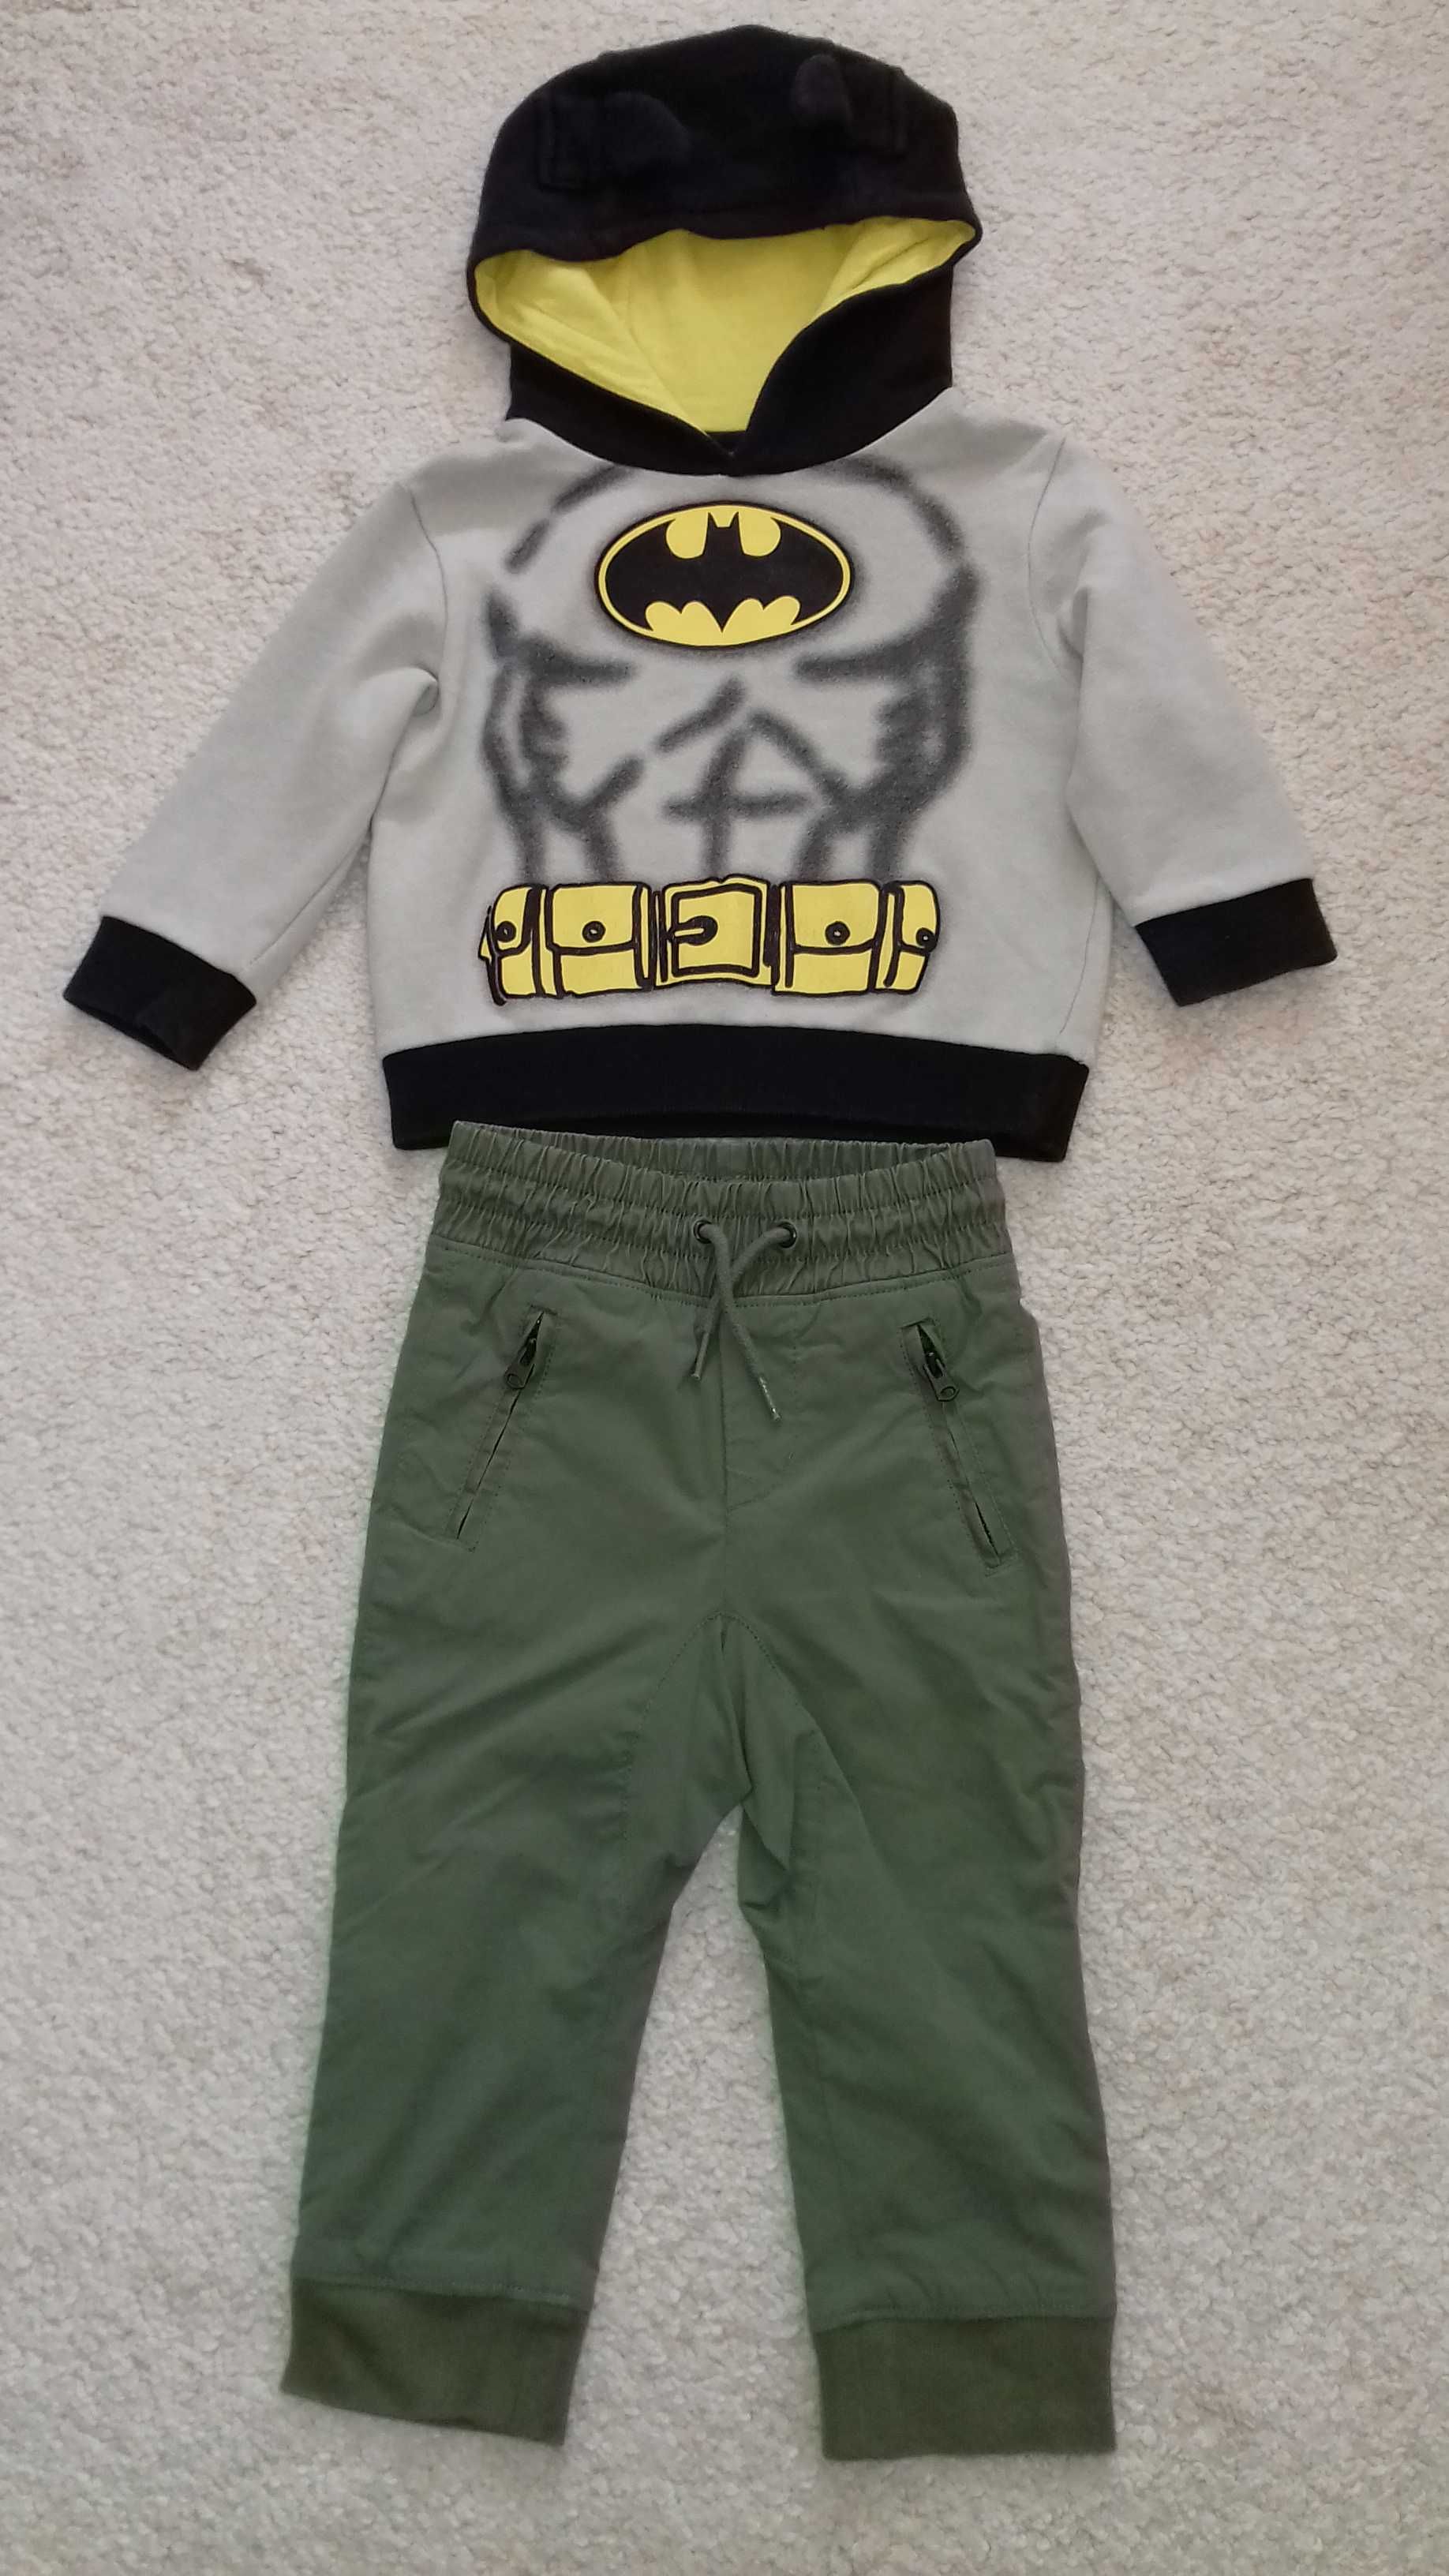 Bluza Batman + Spodnie firmy GAP rozm 2 latka